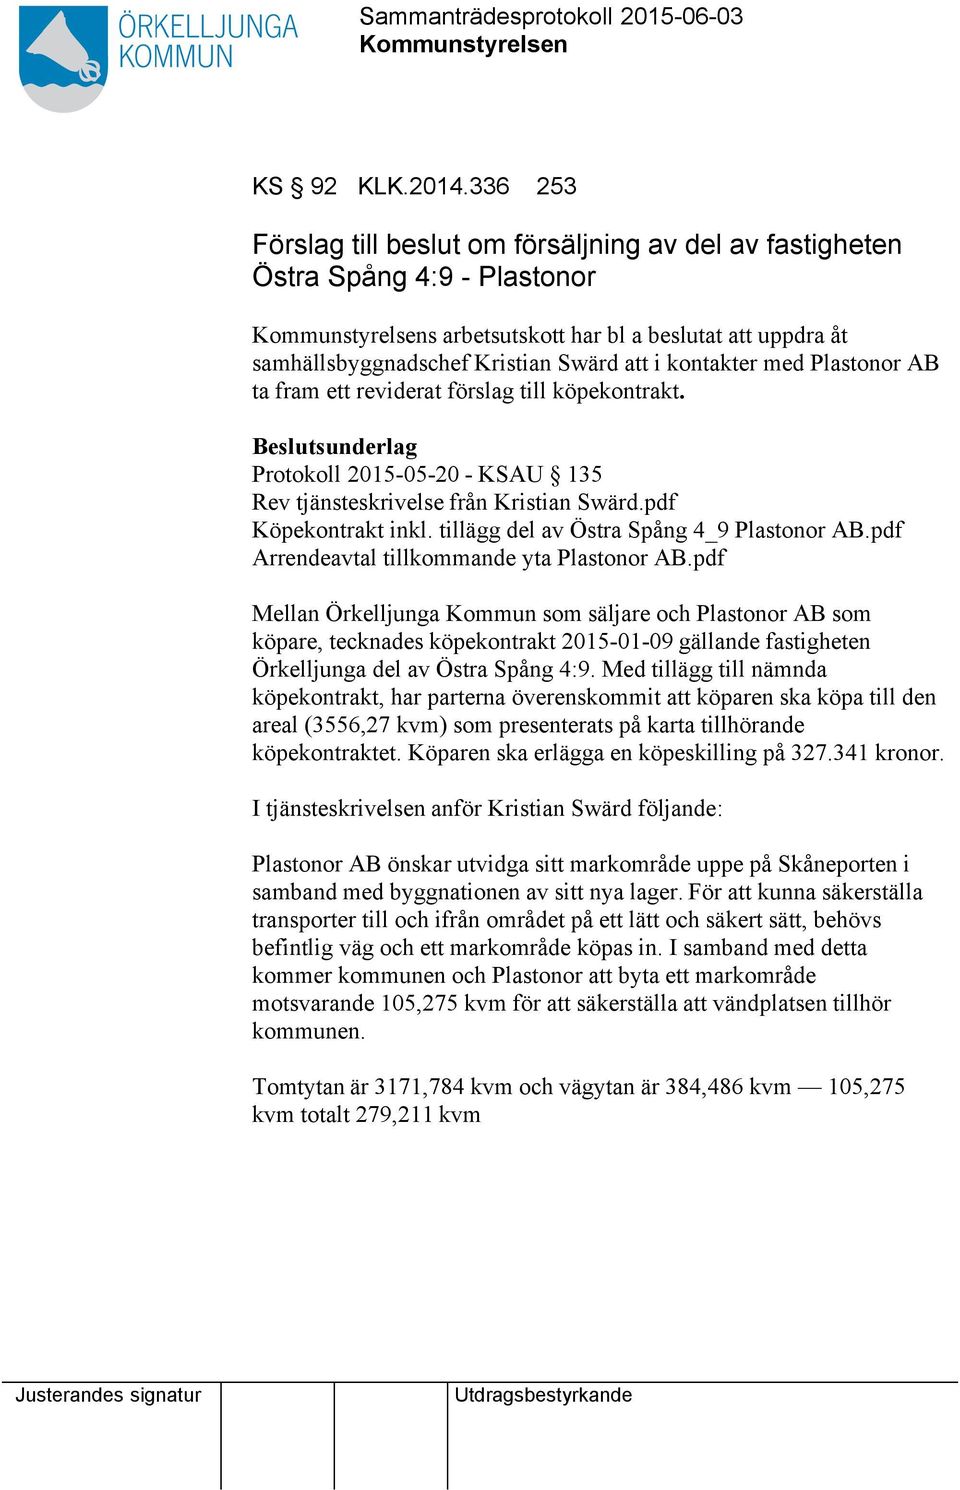 kontakter med Plastonor AB ta fram ett reviderat förslag till köpekontrakt. Beslutsunderlag Protokoll 2015-05-20 - KSAU 135 Rev tjänsteskrivelse från Kristian Swärd.pdf Köpekontrakt inkl.